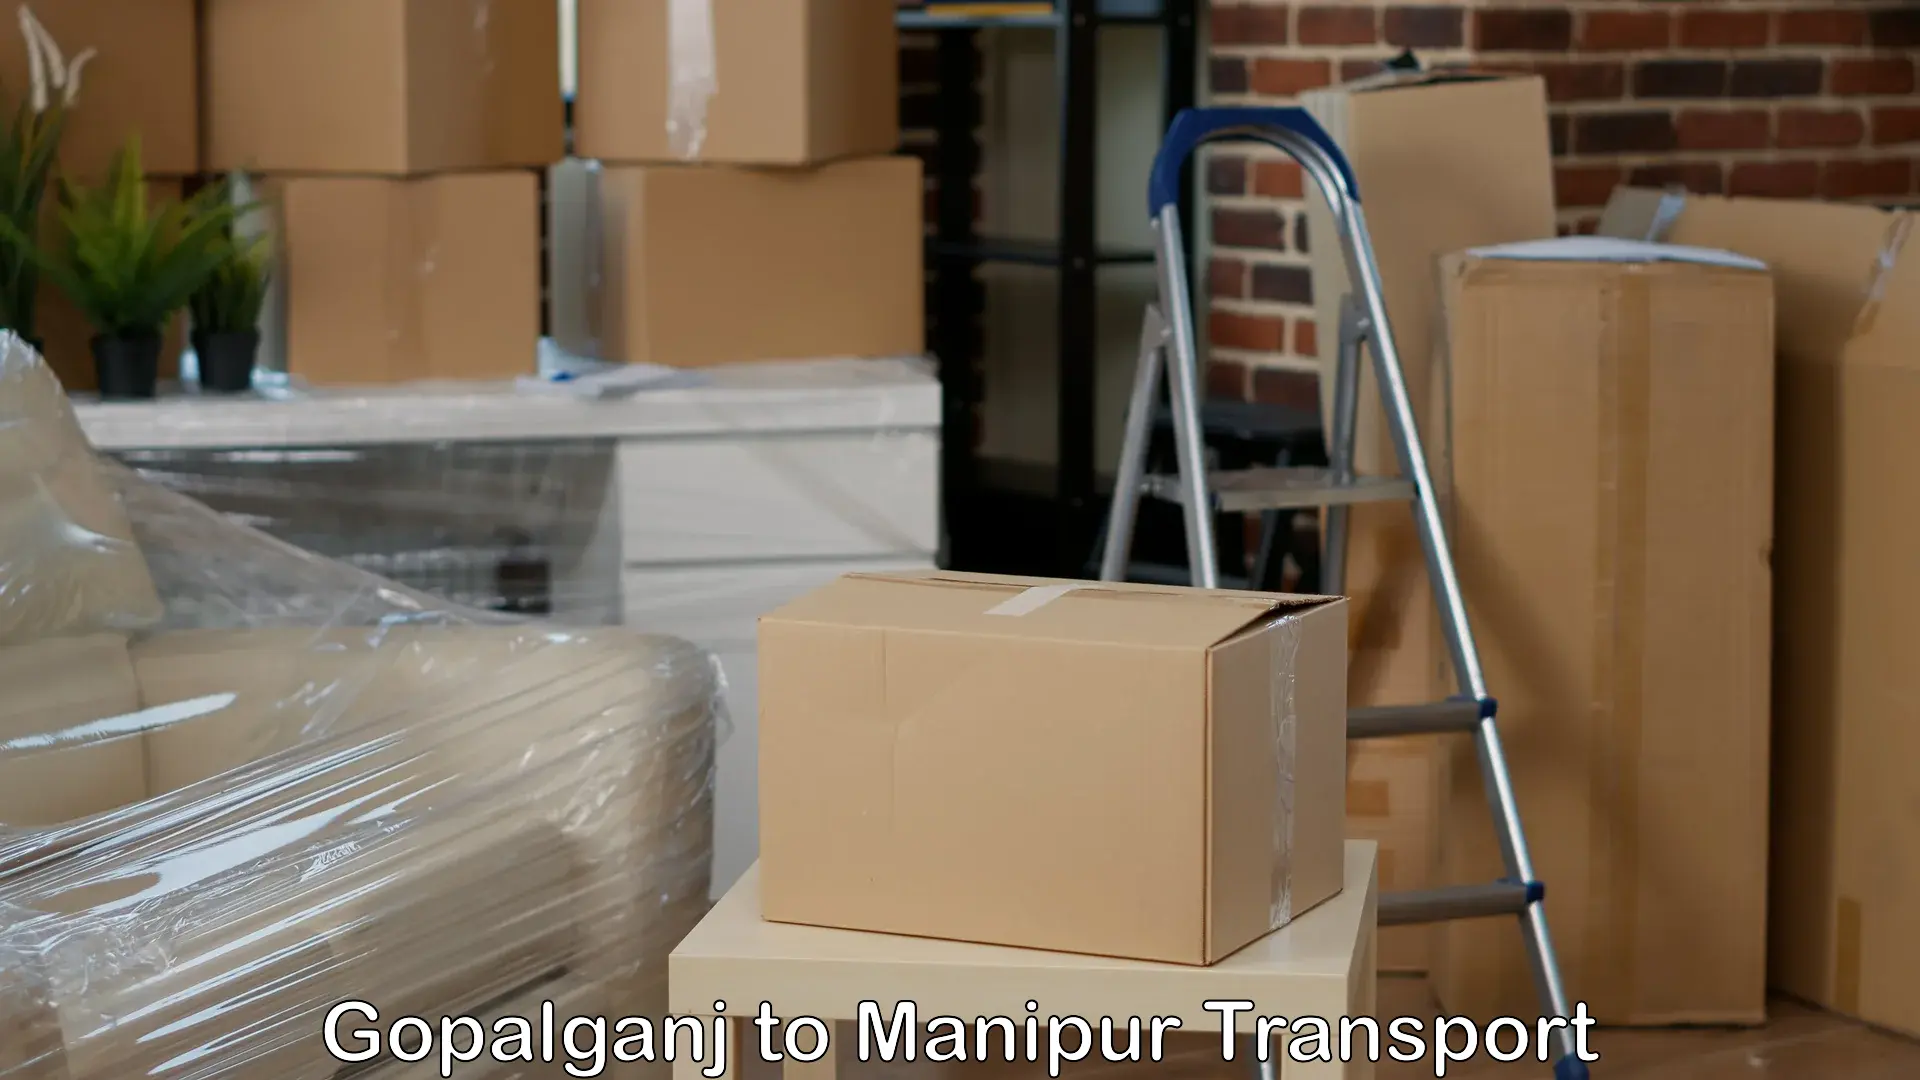 Shipping partner Gopalganj to NIT Manipur